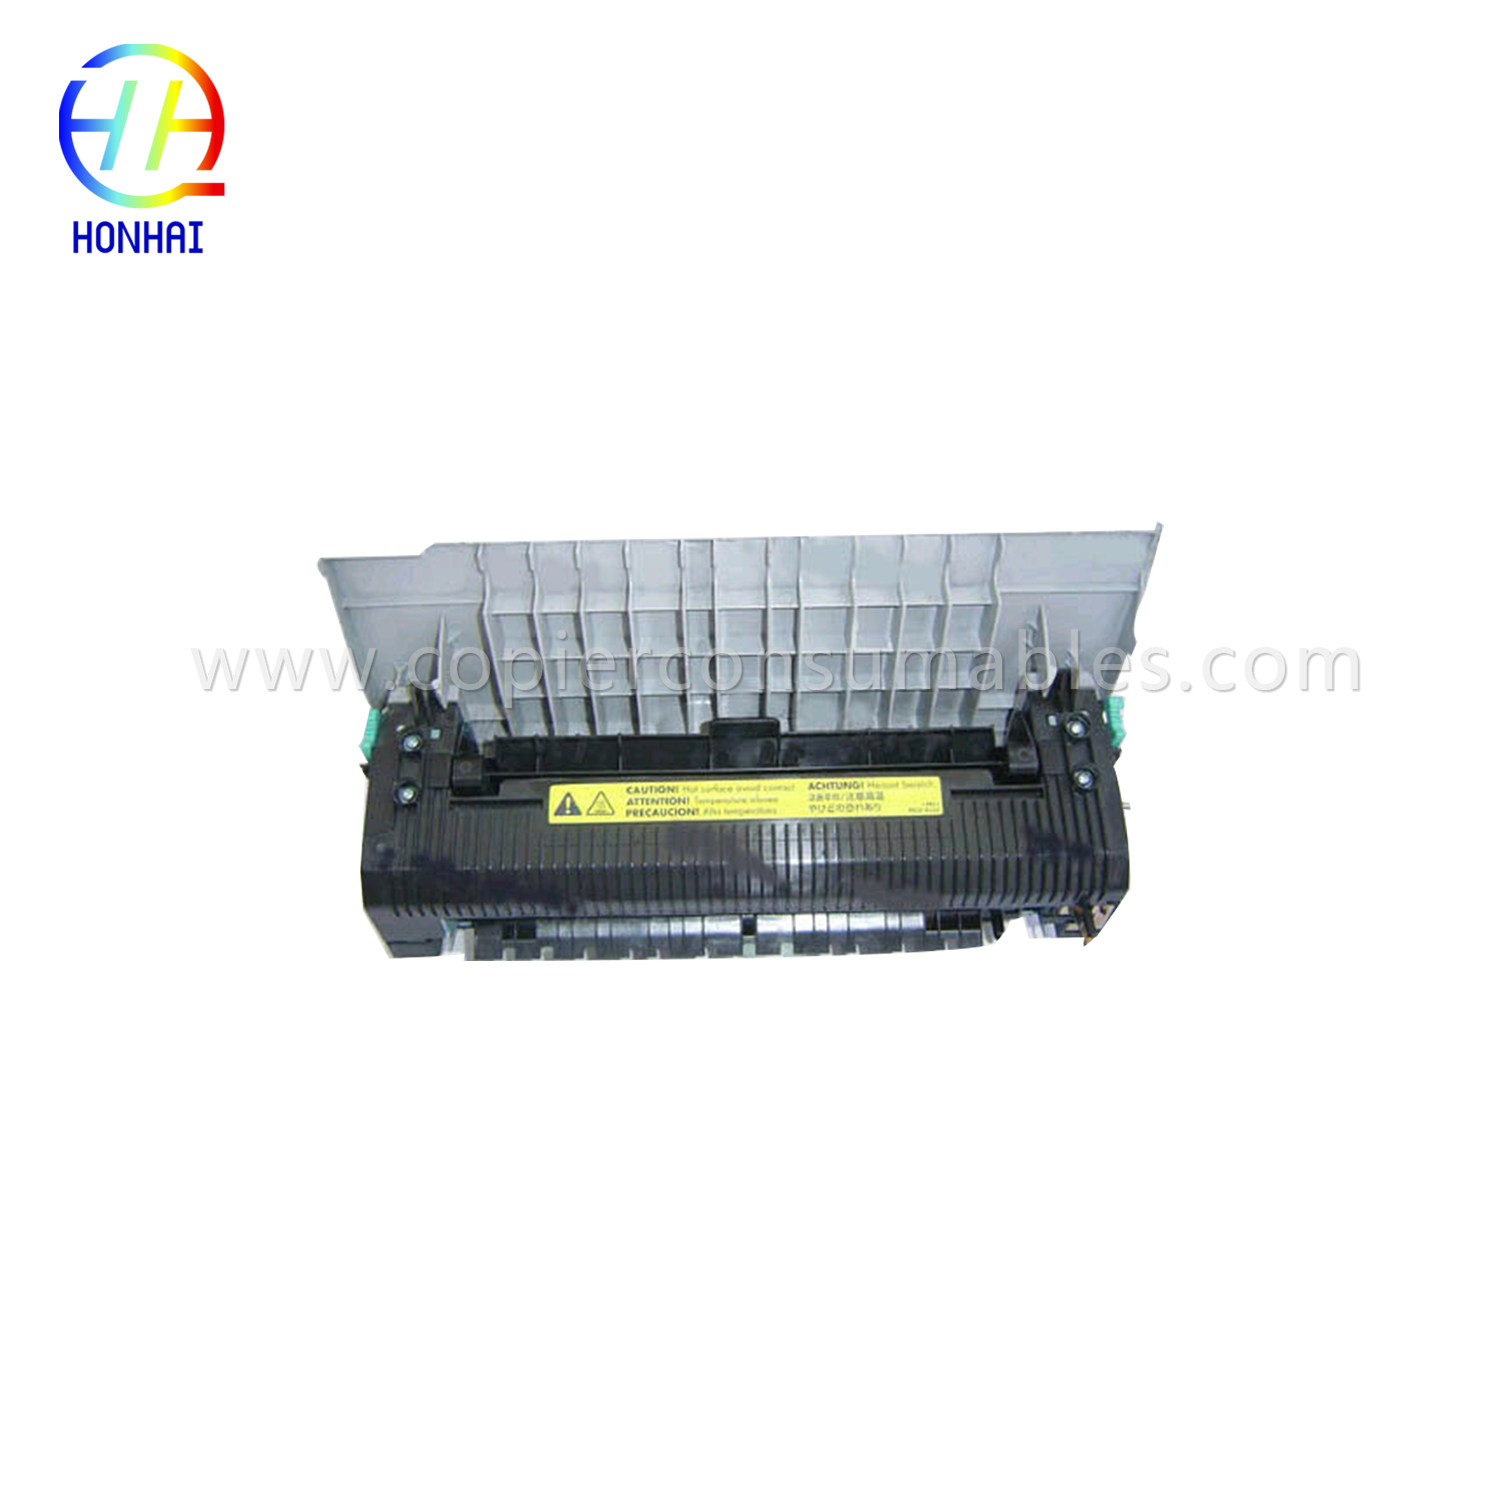 Fuser Unit for HP Color LaserJet 2550 2550L 2550ln 2550n RG5-7572-110Cn